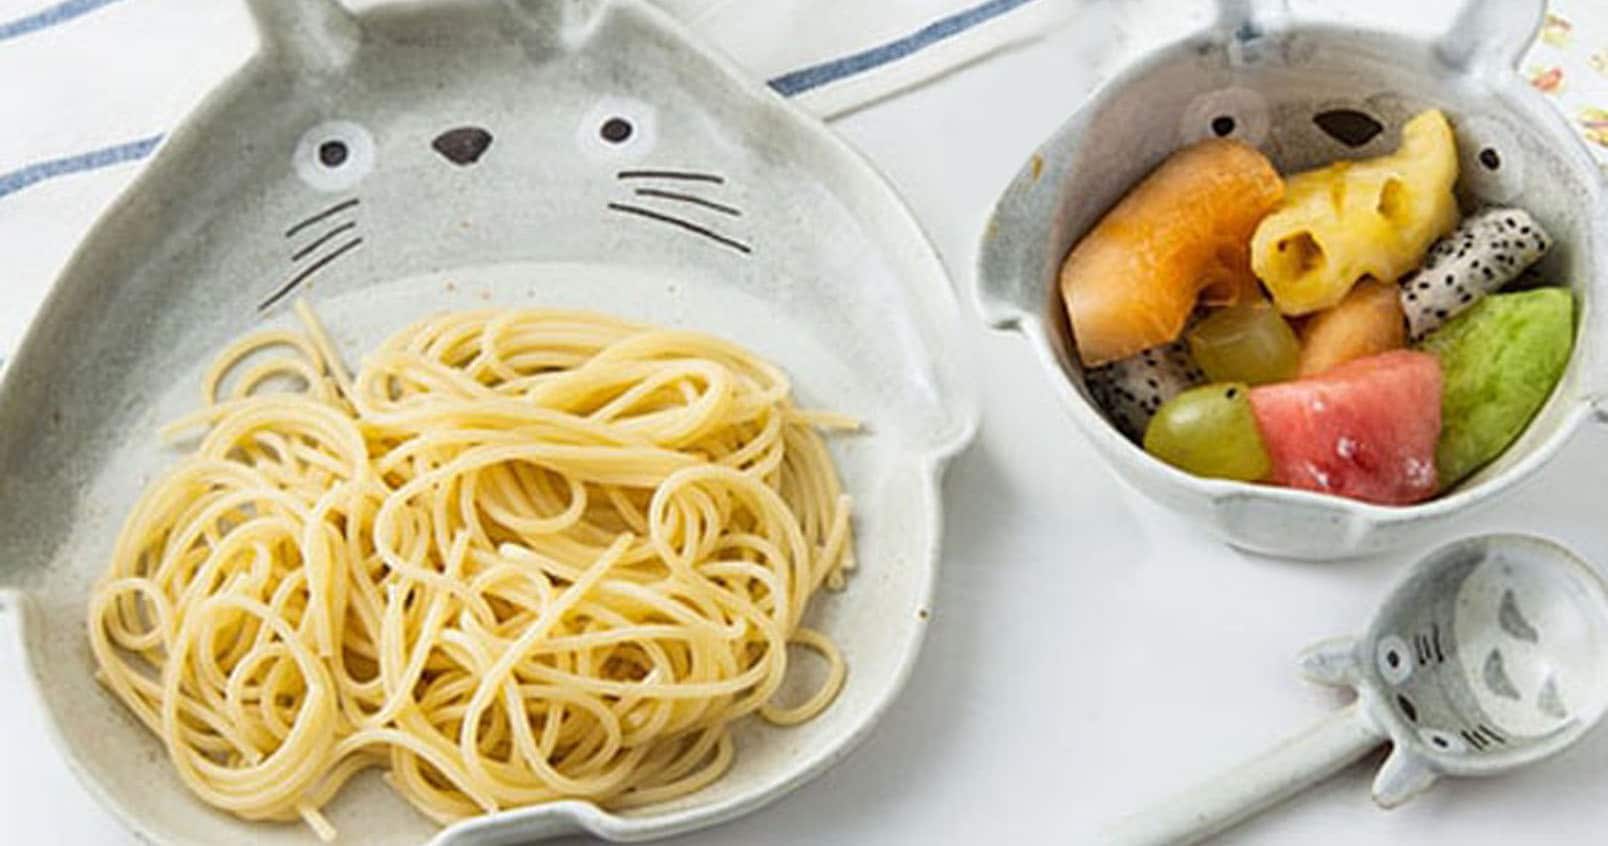 Totoro Dinnerware Set